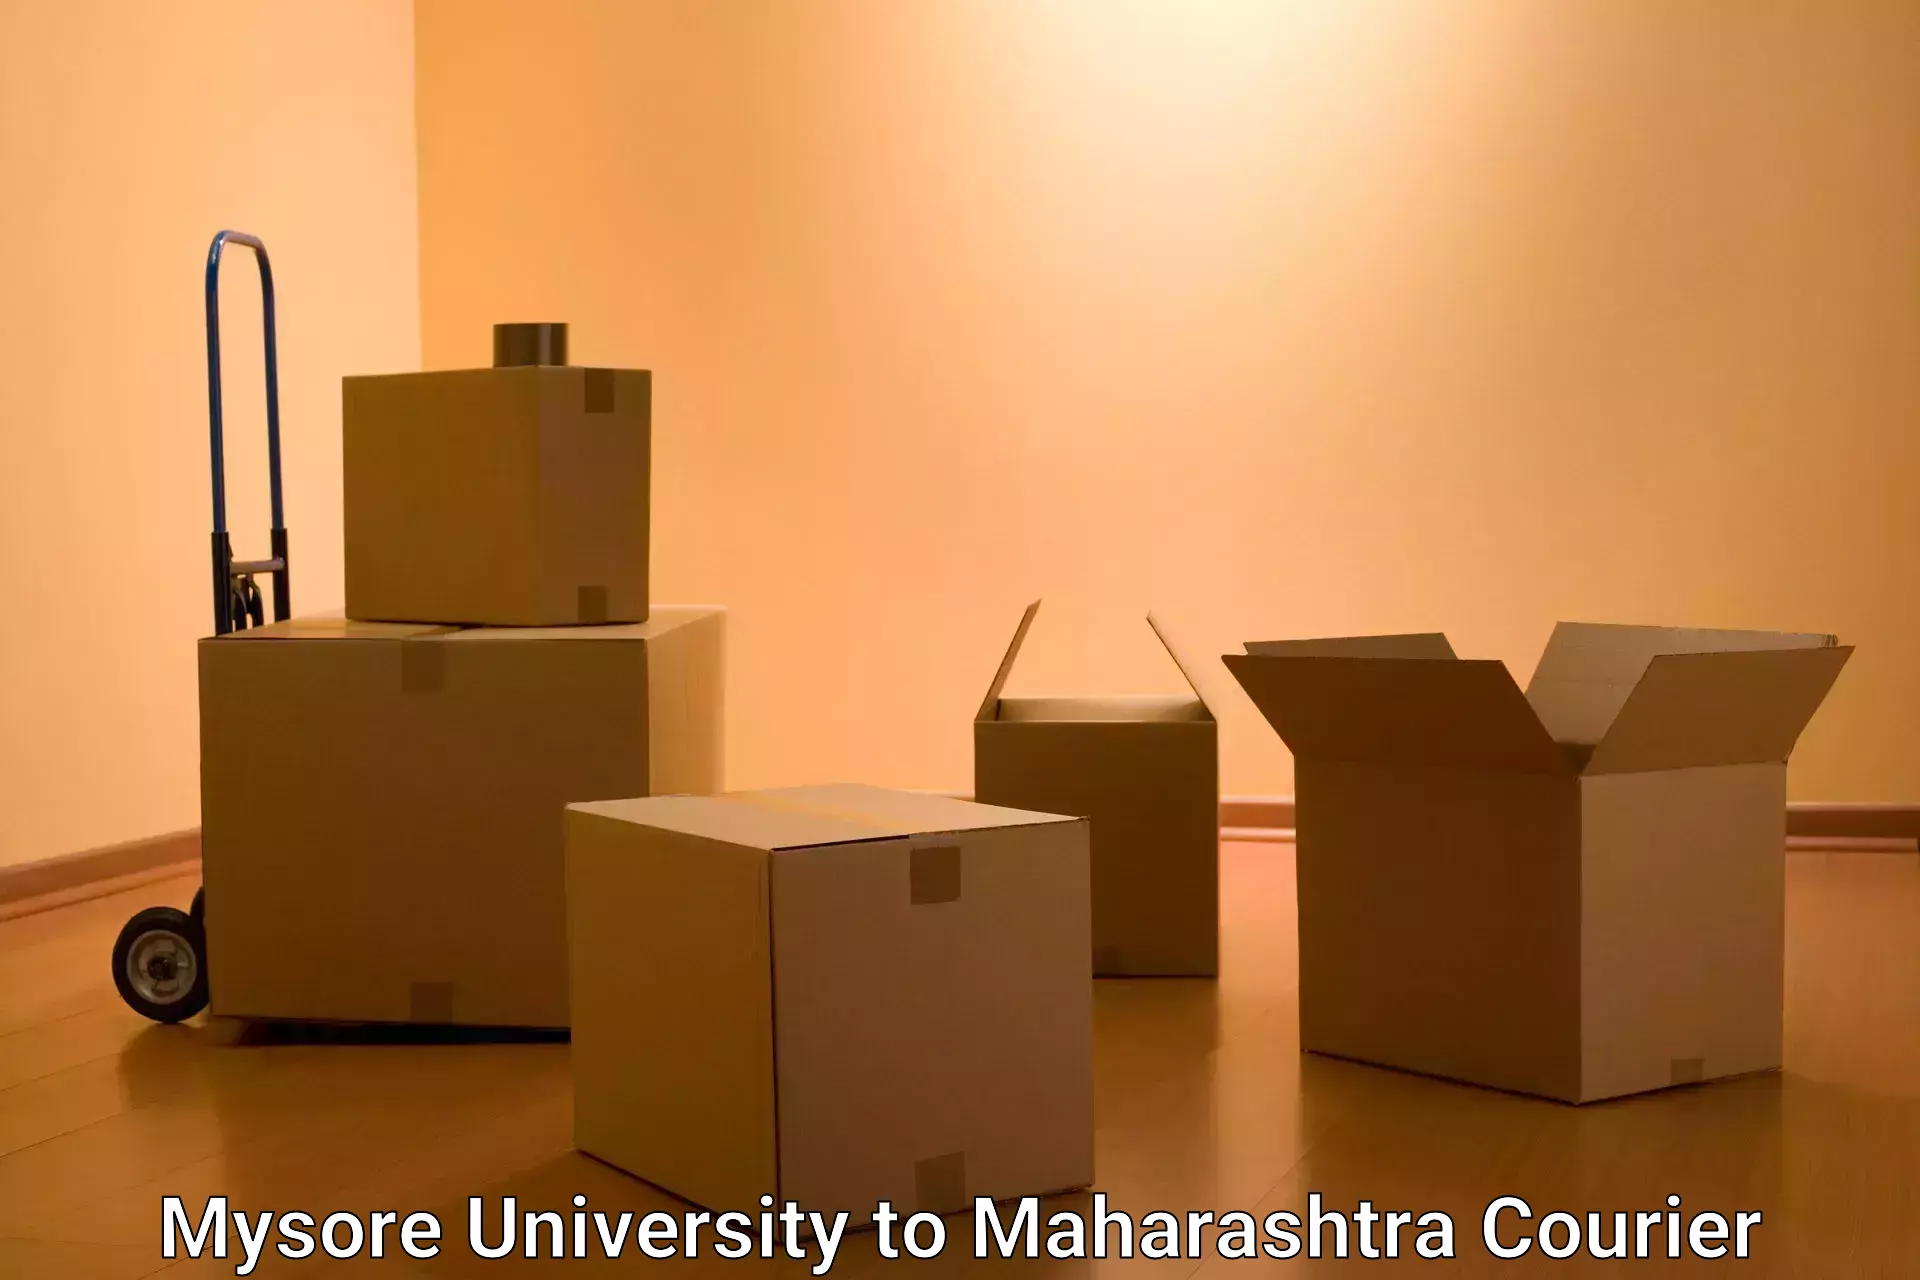 Heavy parcel delivery in Mysore University to Maharashtra